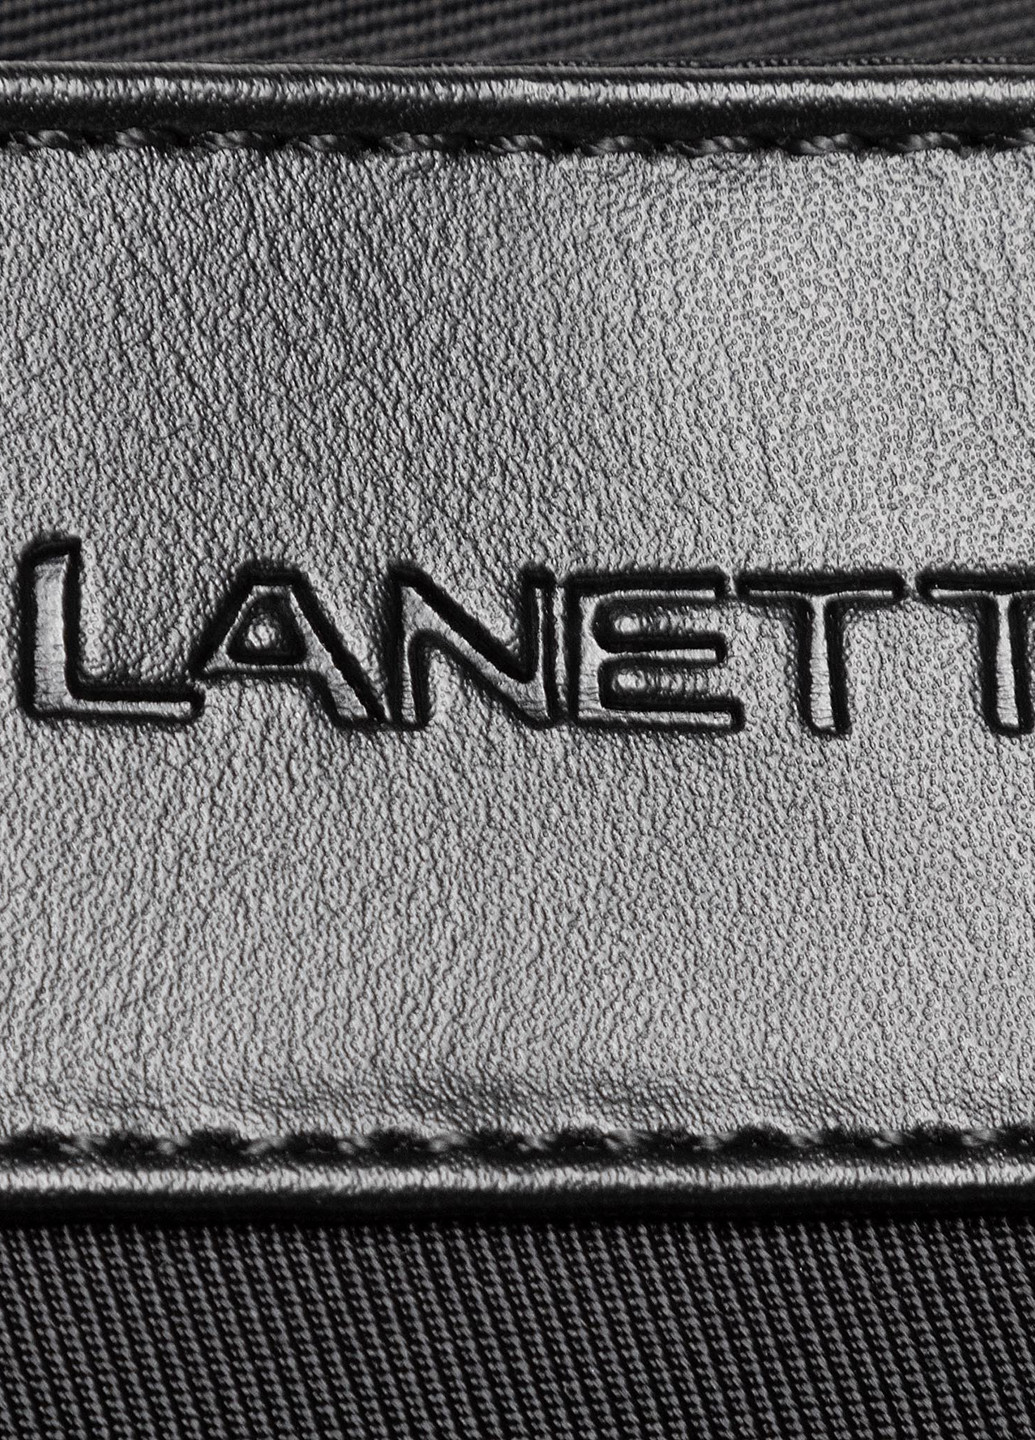 Сумка чоловіча Lanetti BMR-U-036-10-05 планшет однотонна чорна кежуал